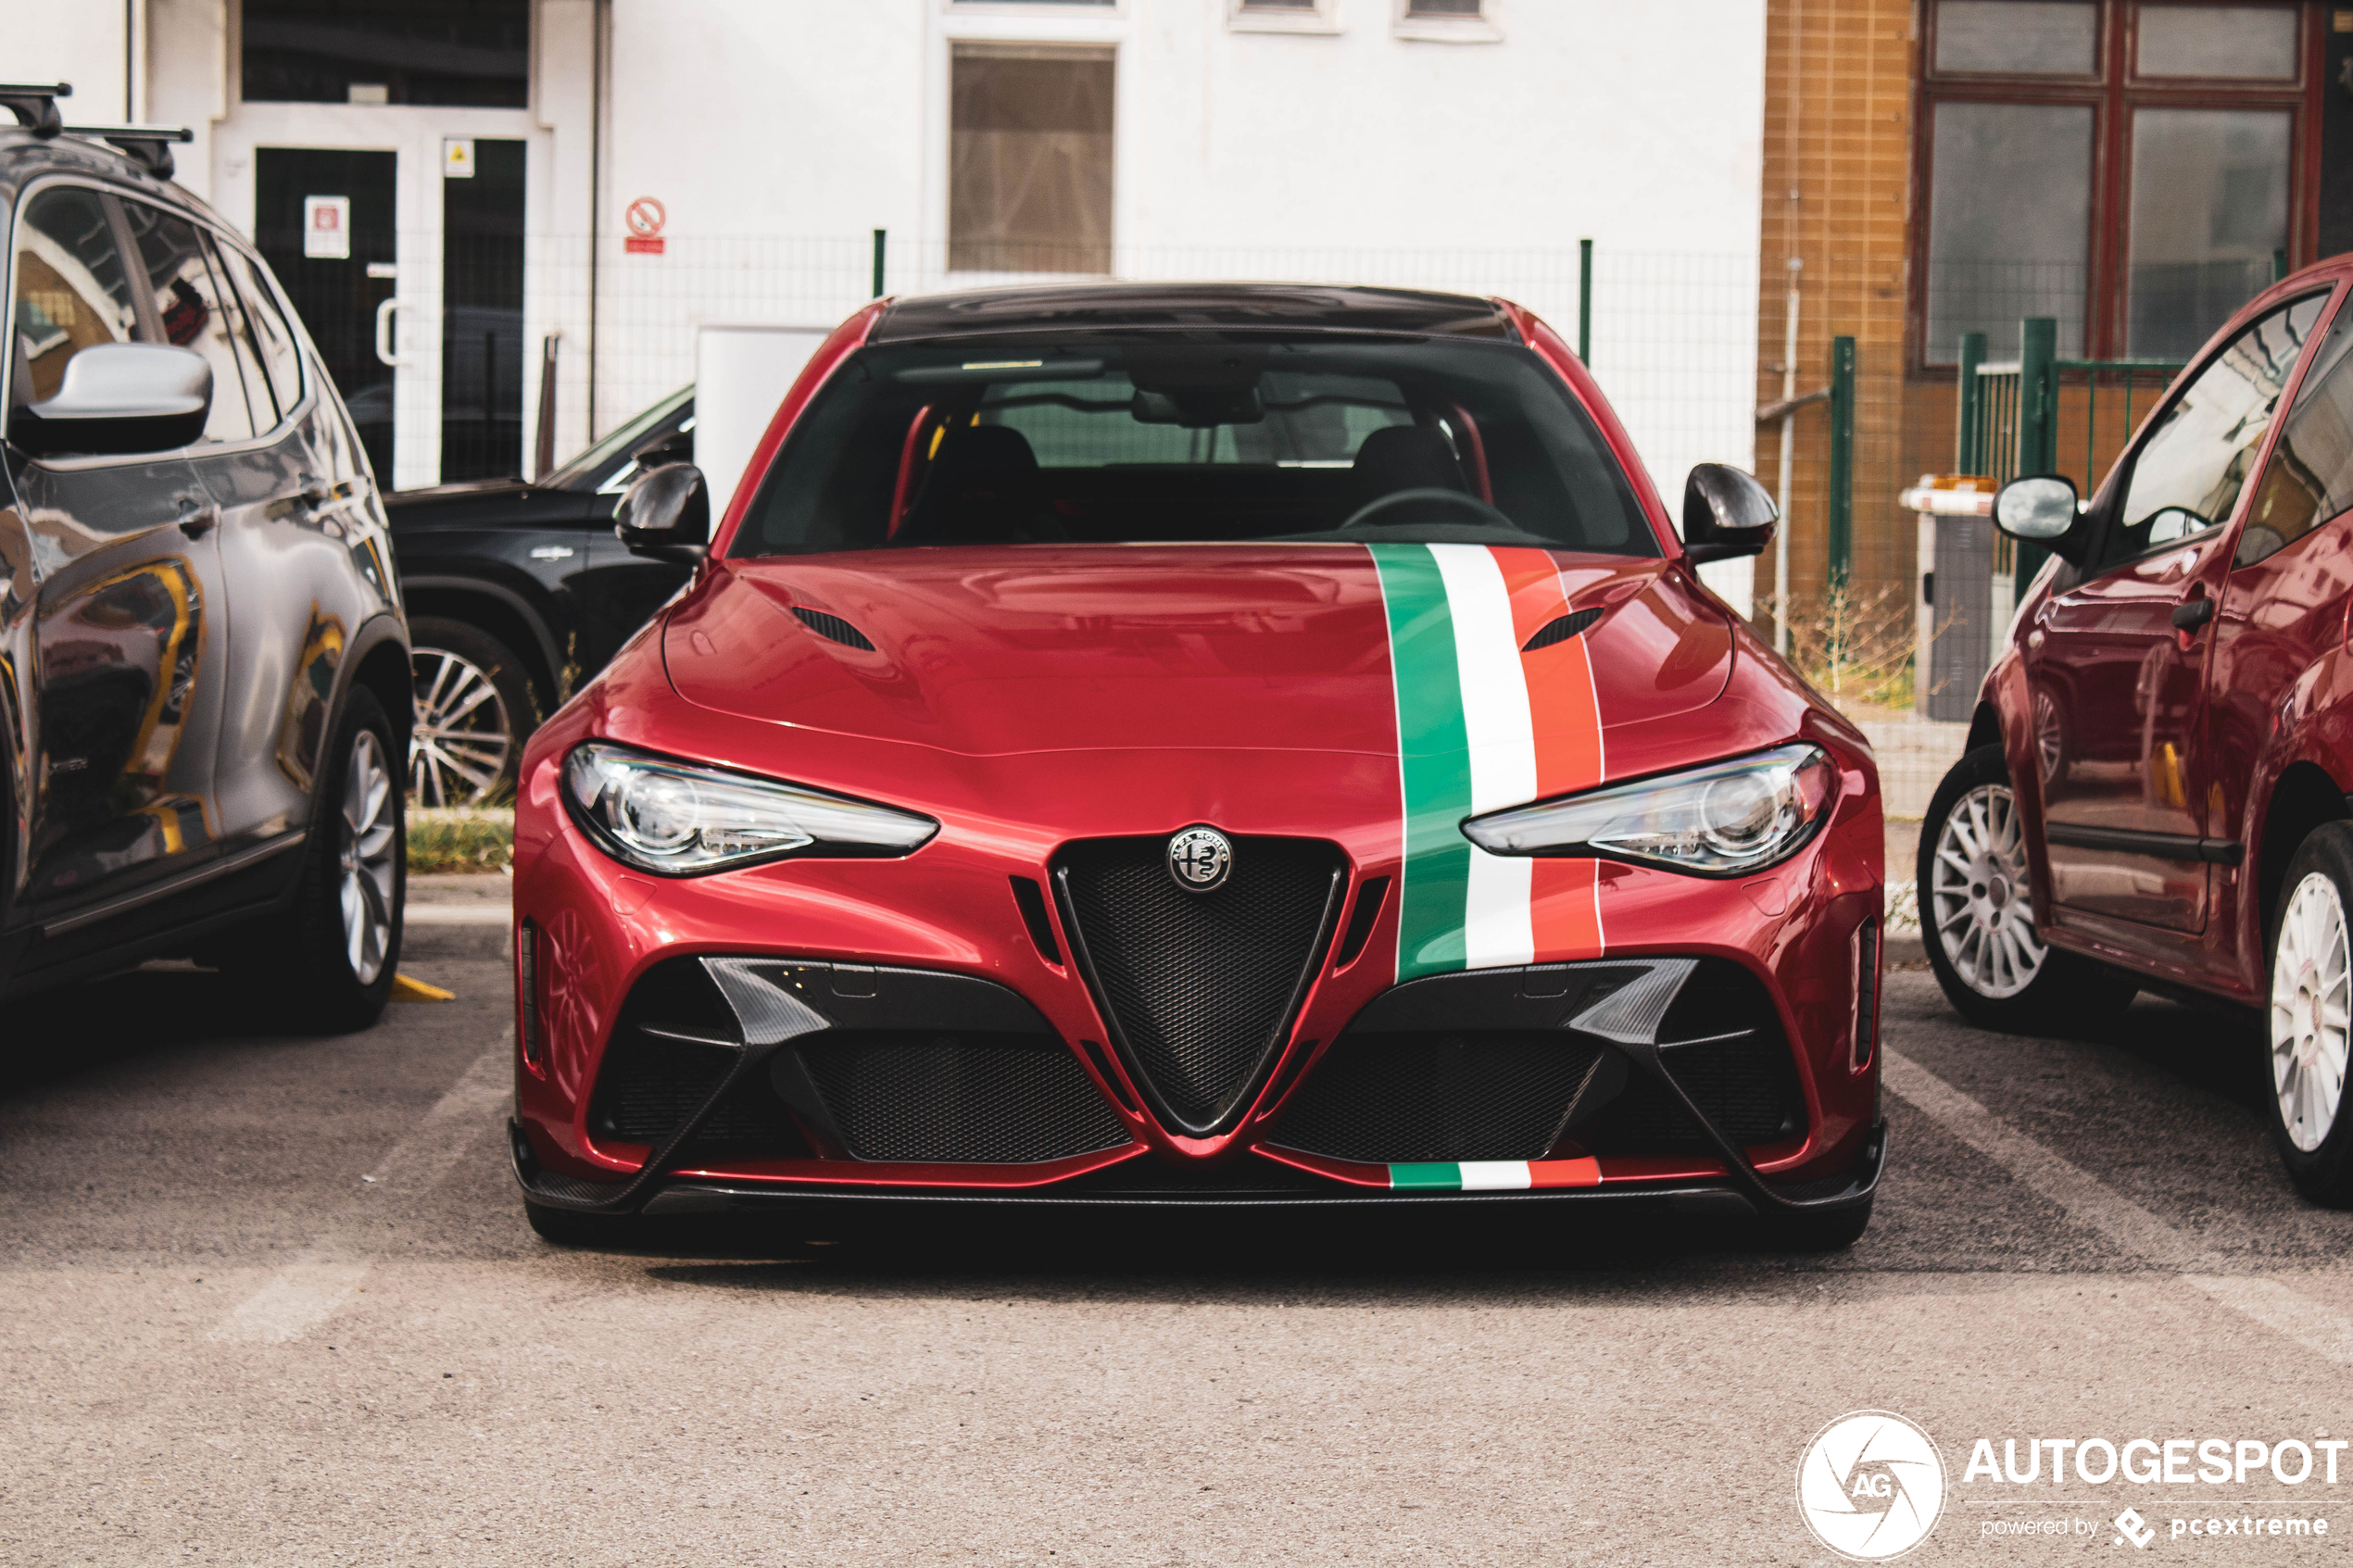 Alfa Romeo Giulia GTAm - 11-10-2021 16:34 - Autogespot